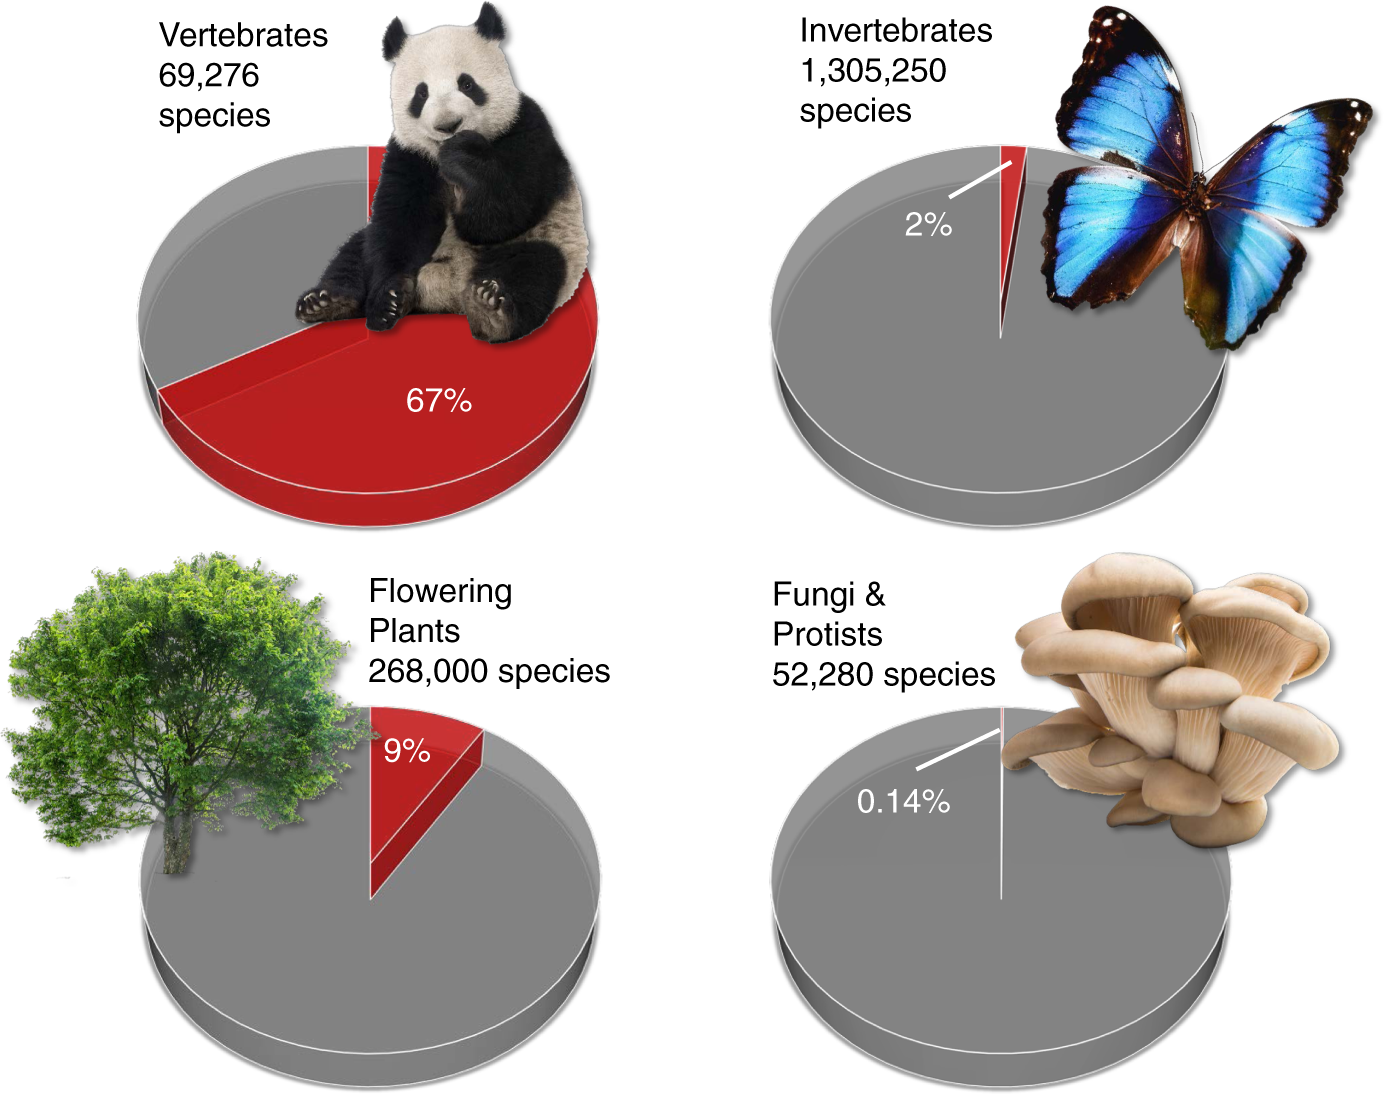 Recognizing the quiet extinction of invertebrates | Nature Communications